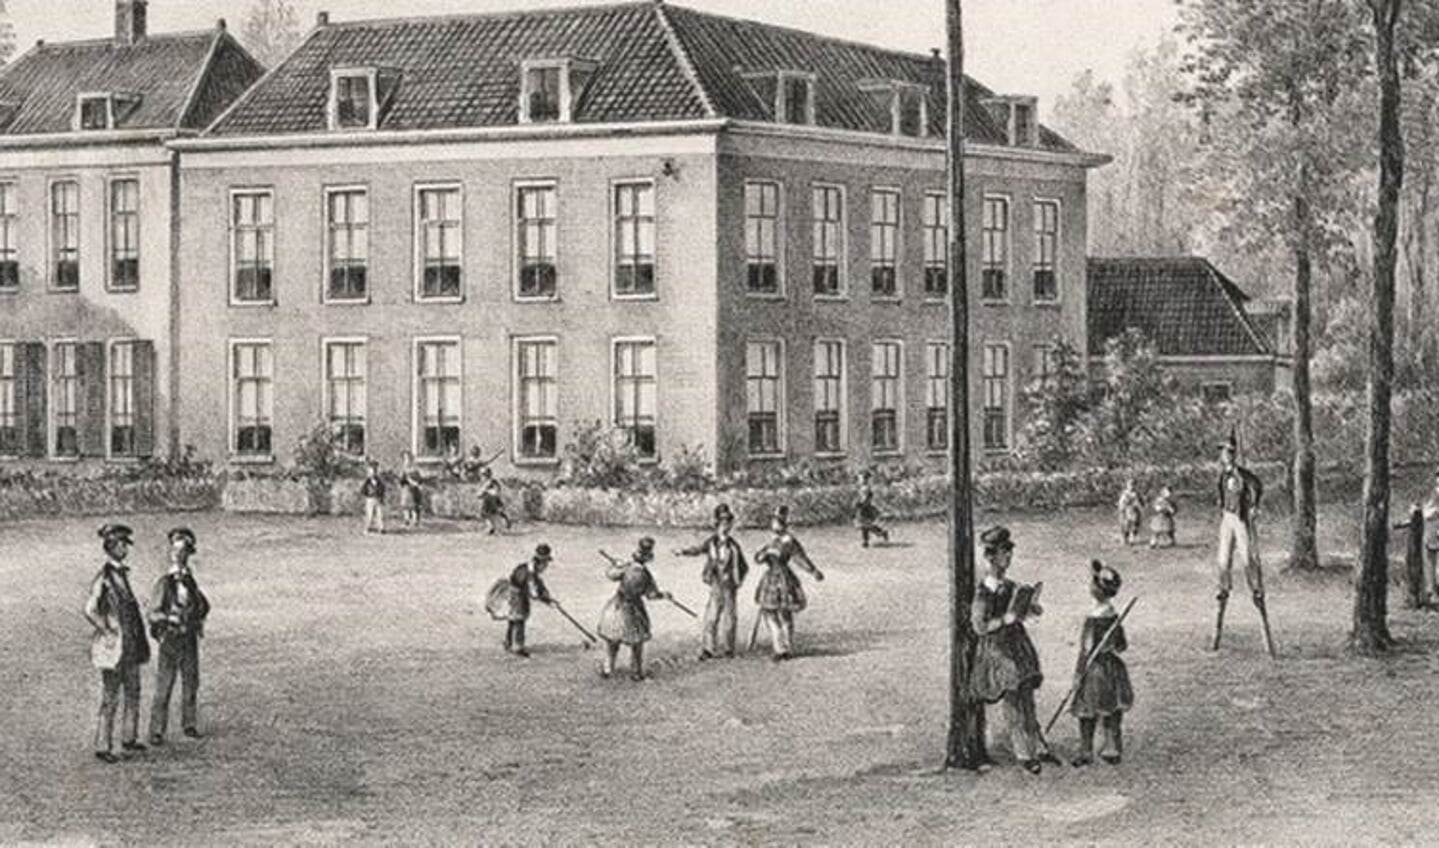 Cricket blijkt te zijn geïntroduceerd in 1845 op de kostschool Noorthey in Veur (het huidige Leidschendam-Voorburg). 